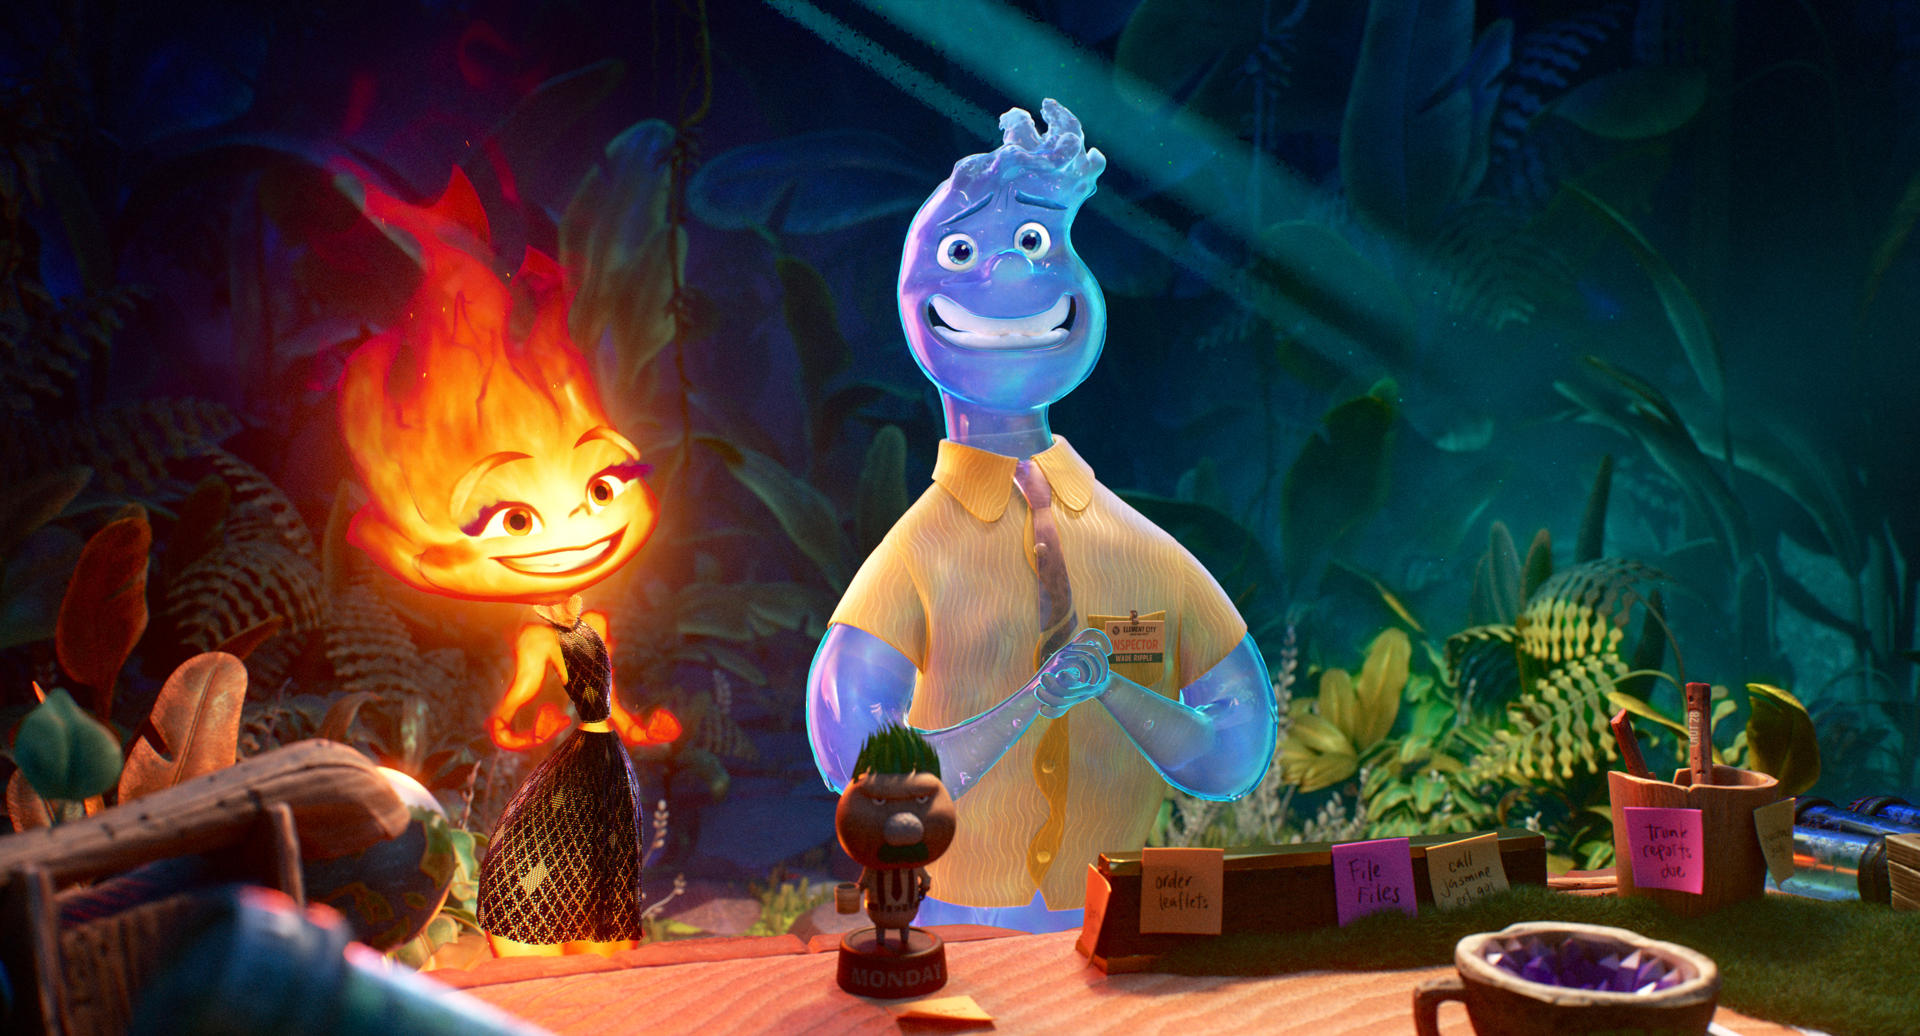 Fotografía cedida por Pixar, que muestra un fotograma de la nueva película Elemental. EFE/Pixar